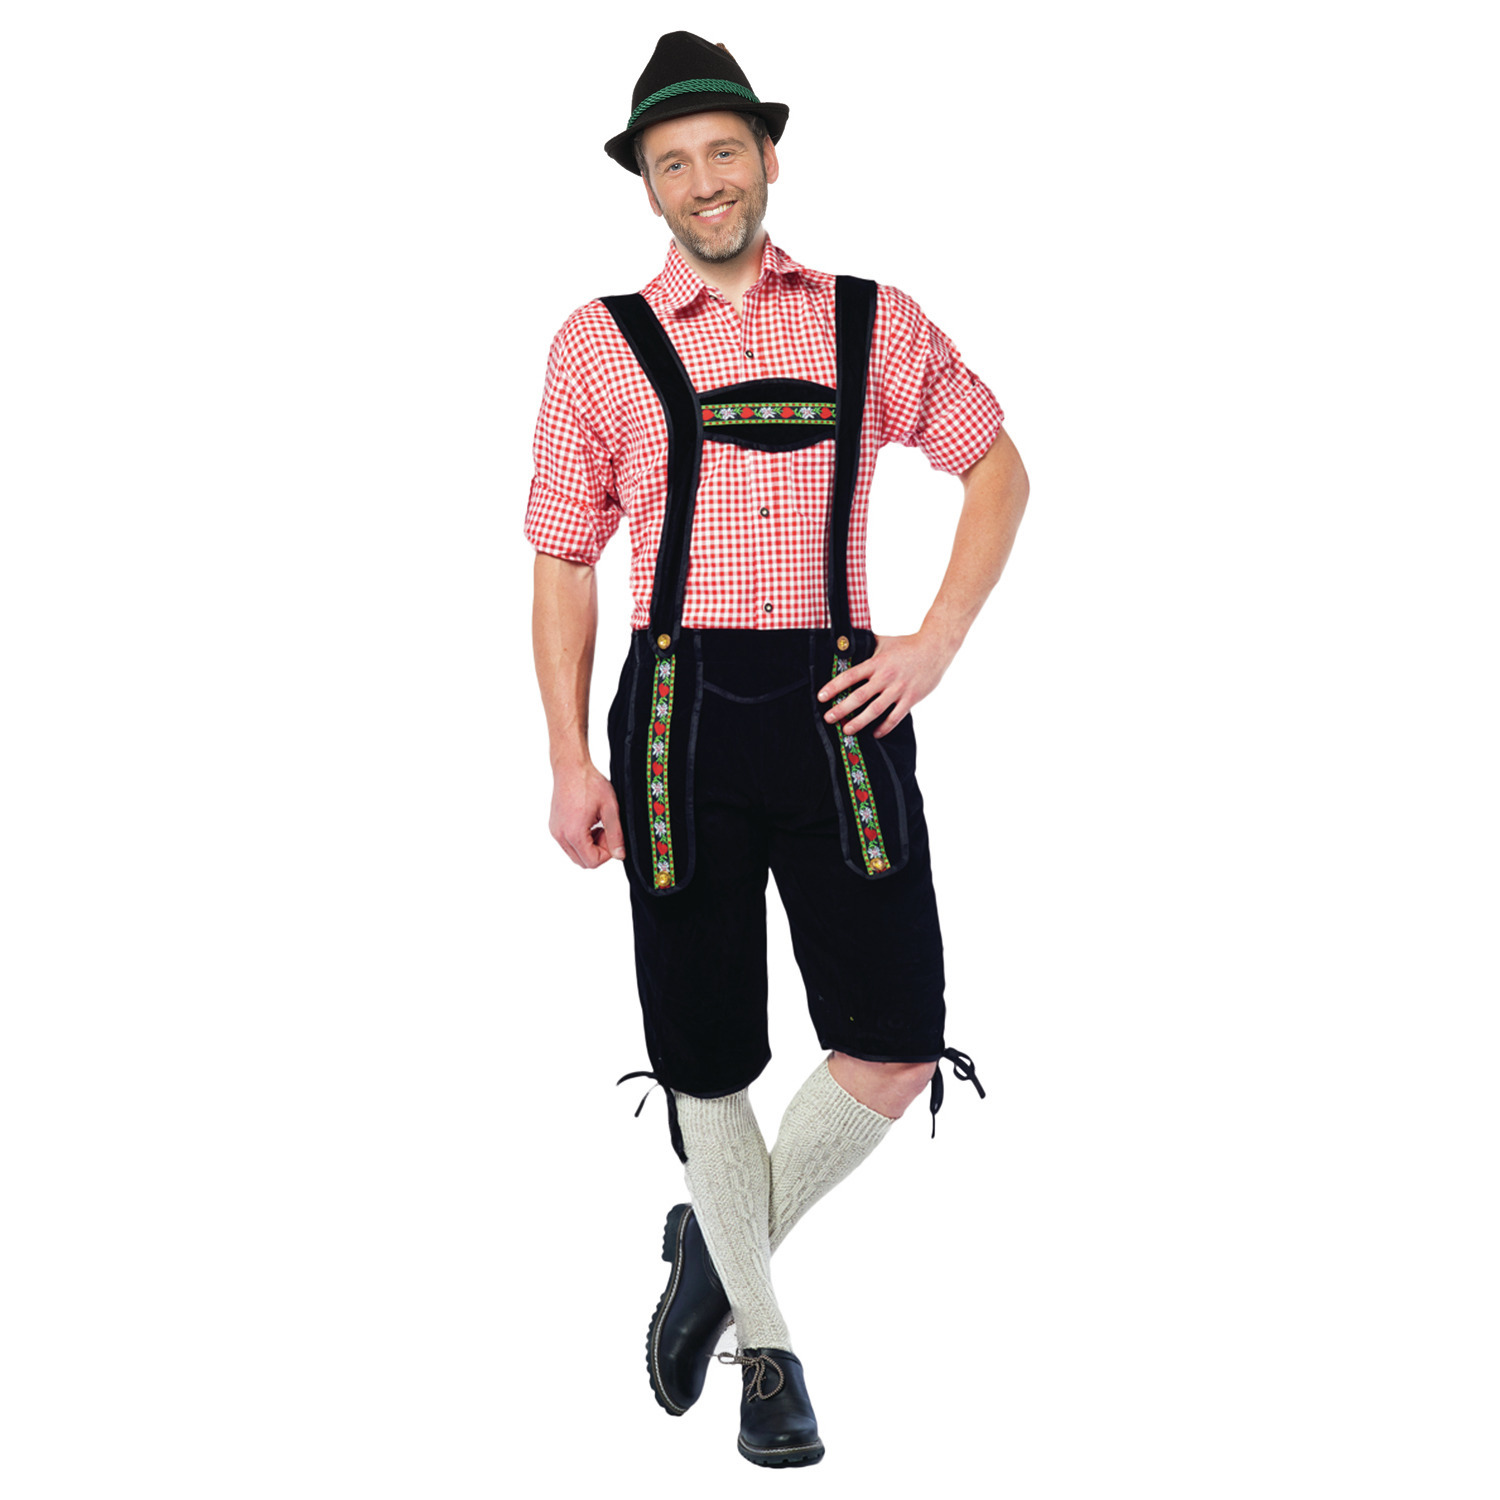 Zwarte lange Tiroler lederhosen verkleed kostuum voor heren